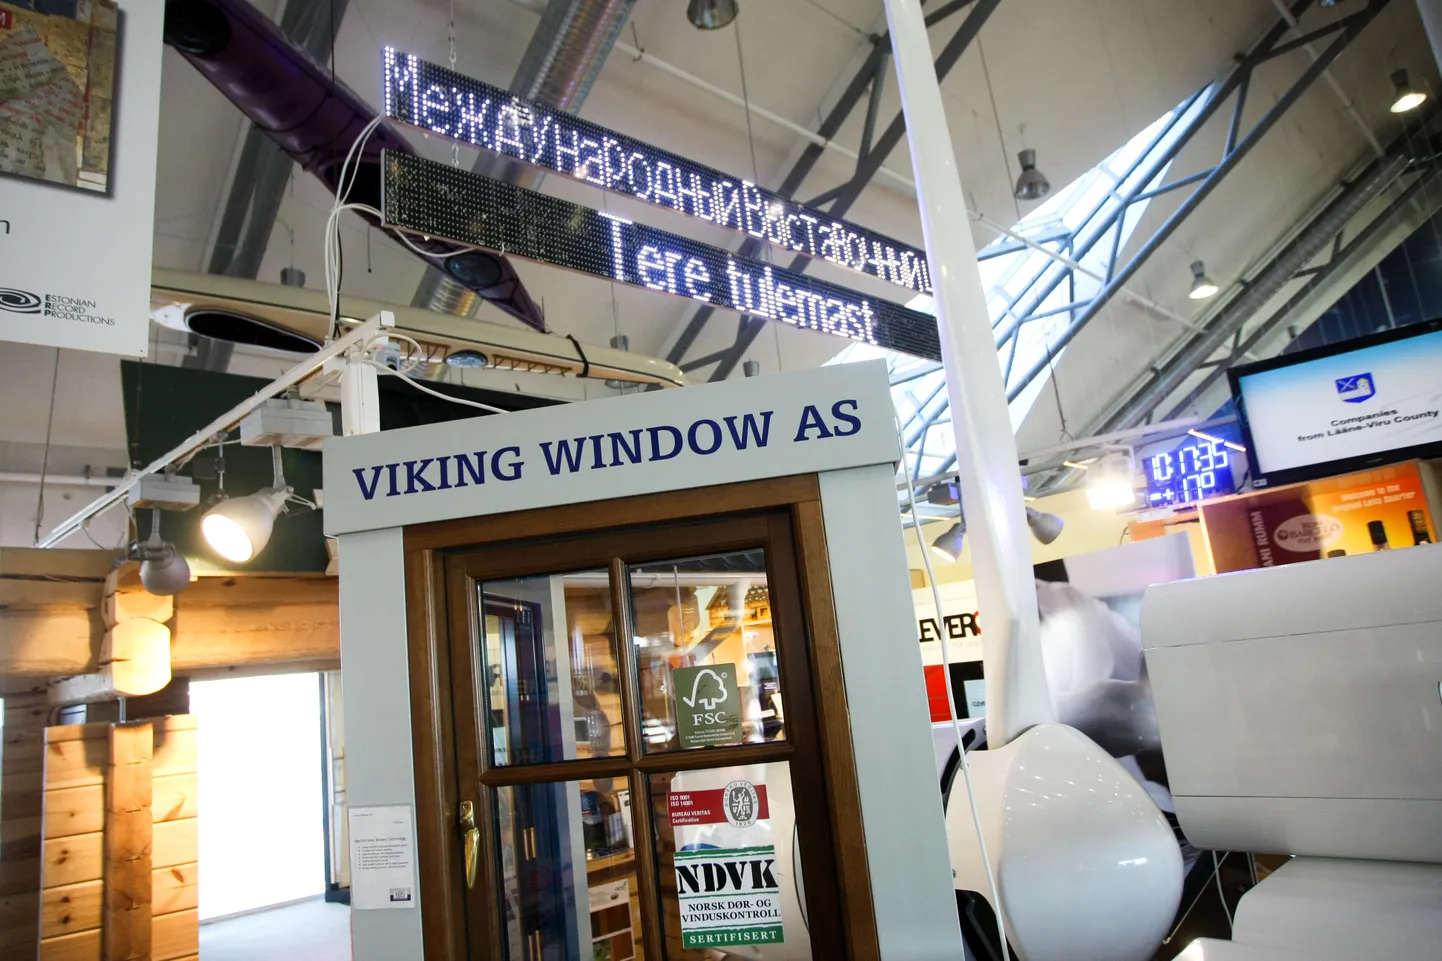 Tallinna lennujaamas tutvustab oma toodangut Konesko ja Viking Window.
DMITRI KOTJUH, JÄRVA TEATAJA/SCANPIX